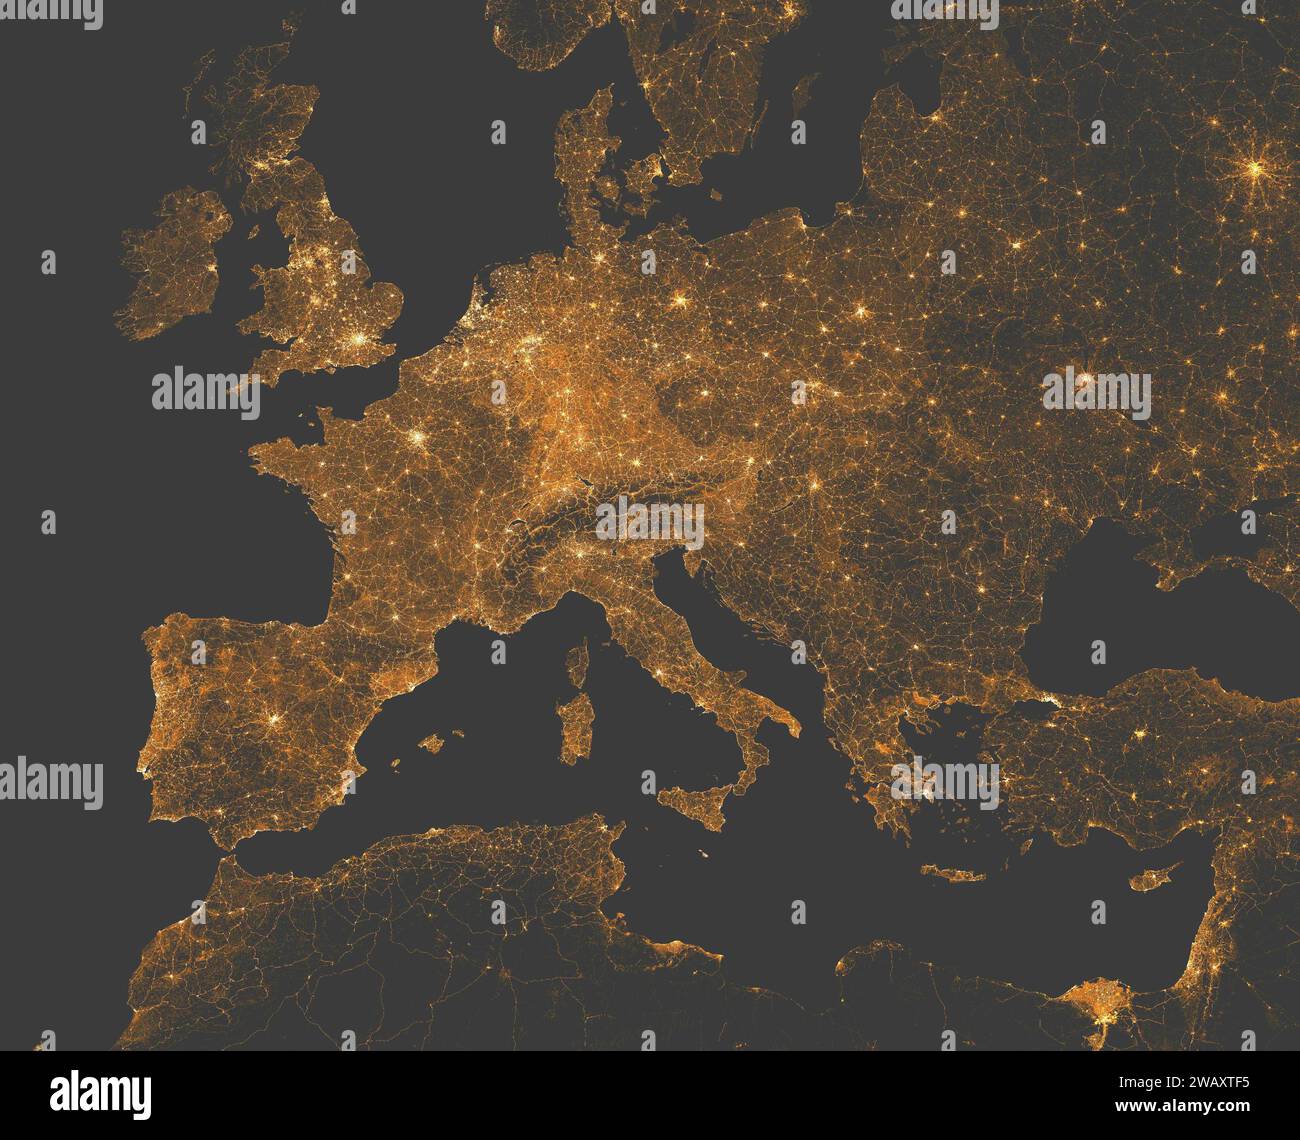 Nachtsicht auf Europa und das Mittelmeer. Stadt- und Straßenlaternen. Elemente dieses Bildes werden von der NASA bereitgestellt Stockfoto